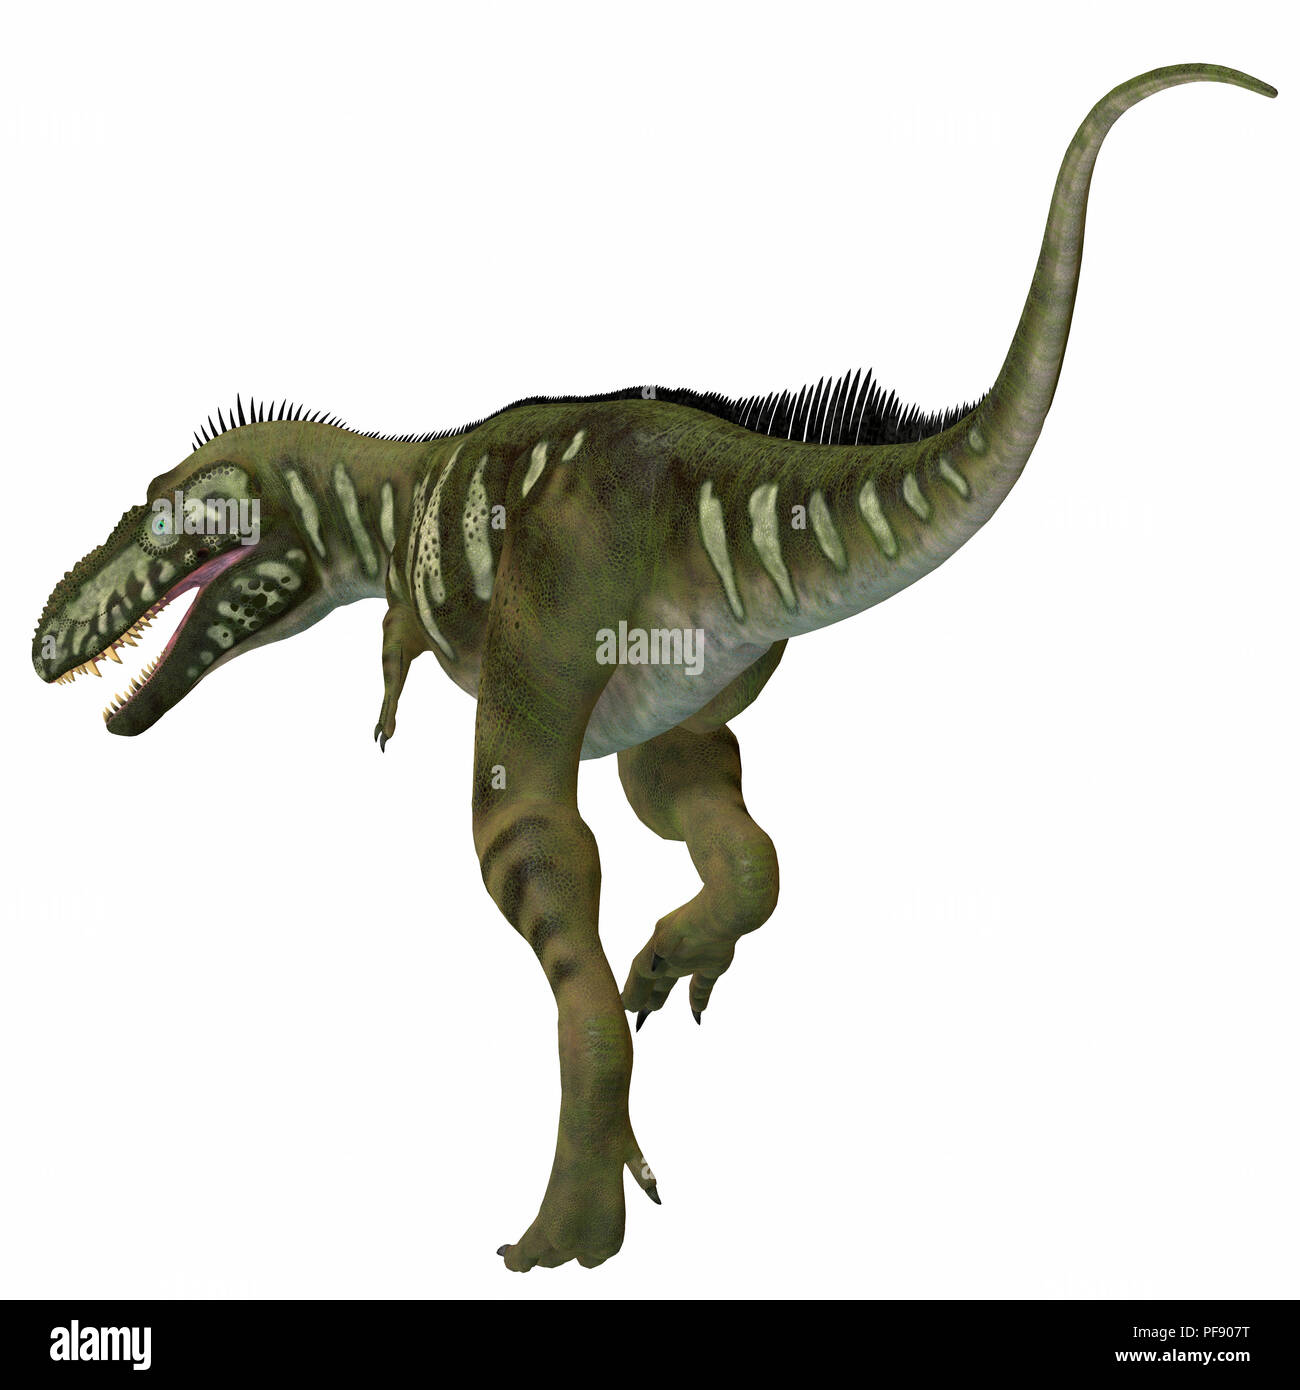 Bistahieversor Dinosaurier - Bistahieversor theropode war ein fleischfressender Dinosaurier in New York lebte, Nordamerika während der Kreidezeit. Stockfoto